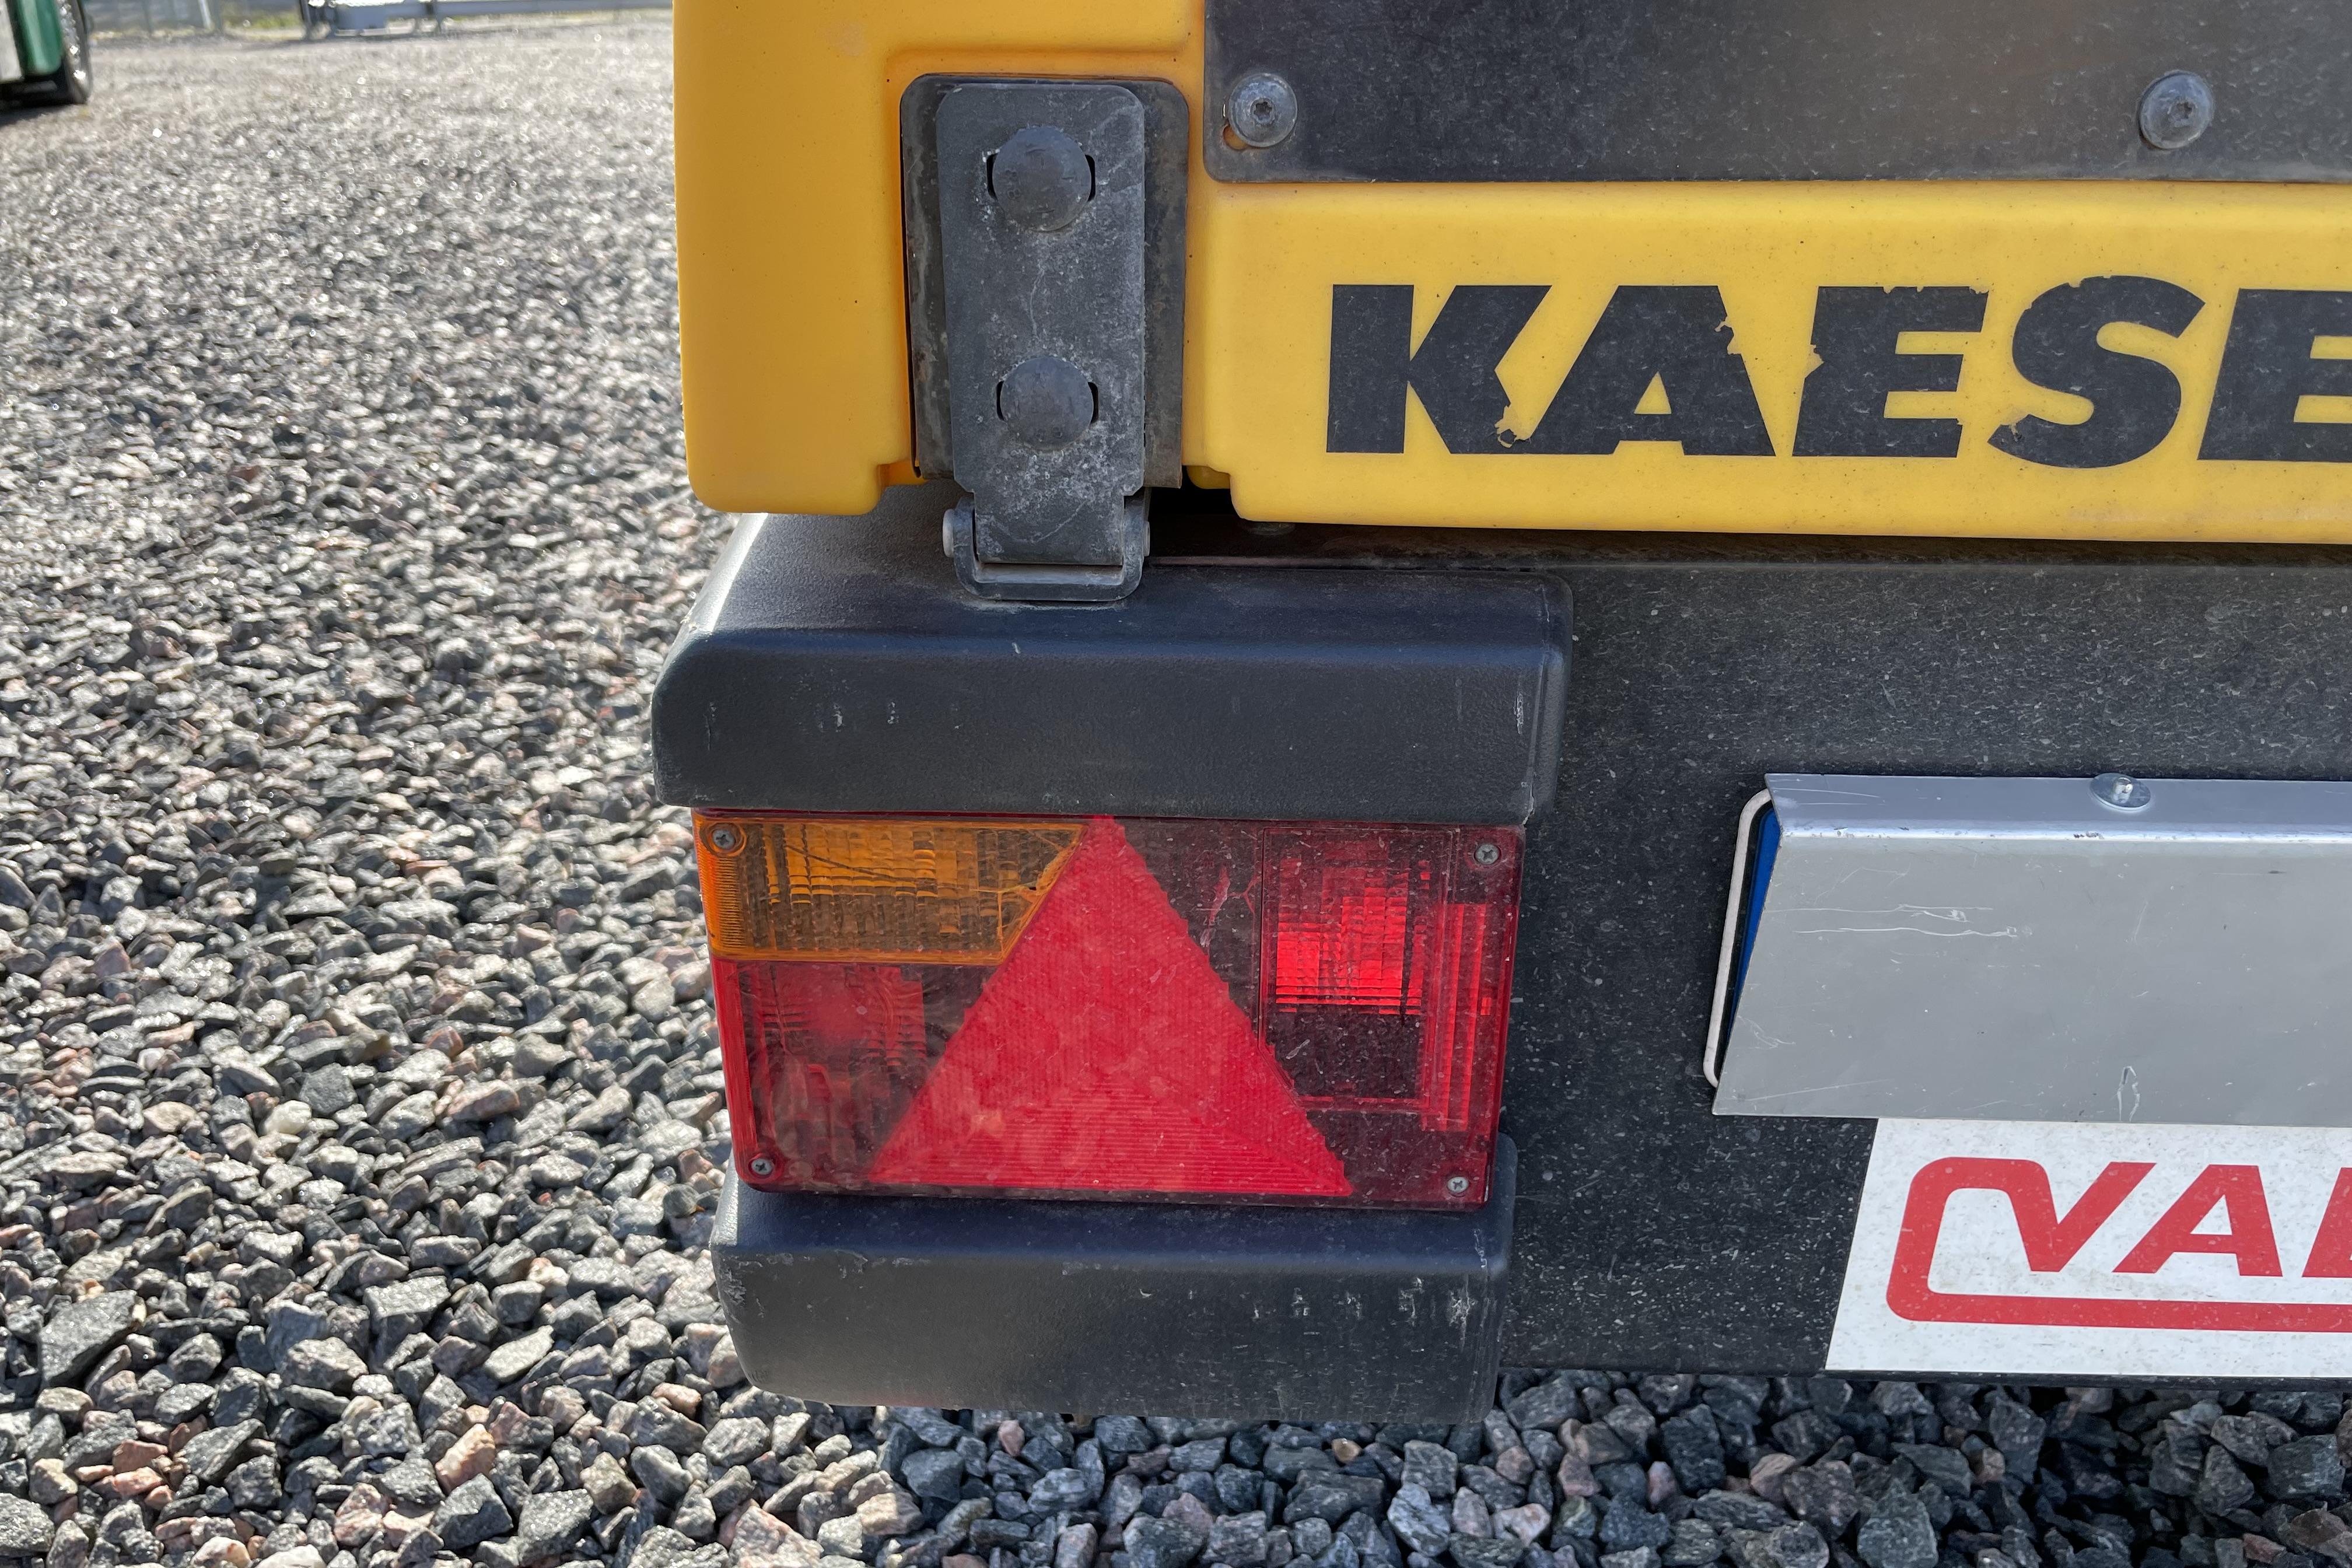 Kaeser M 50 - 2 954 km - yellow - 2018